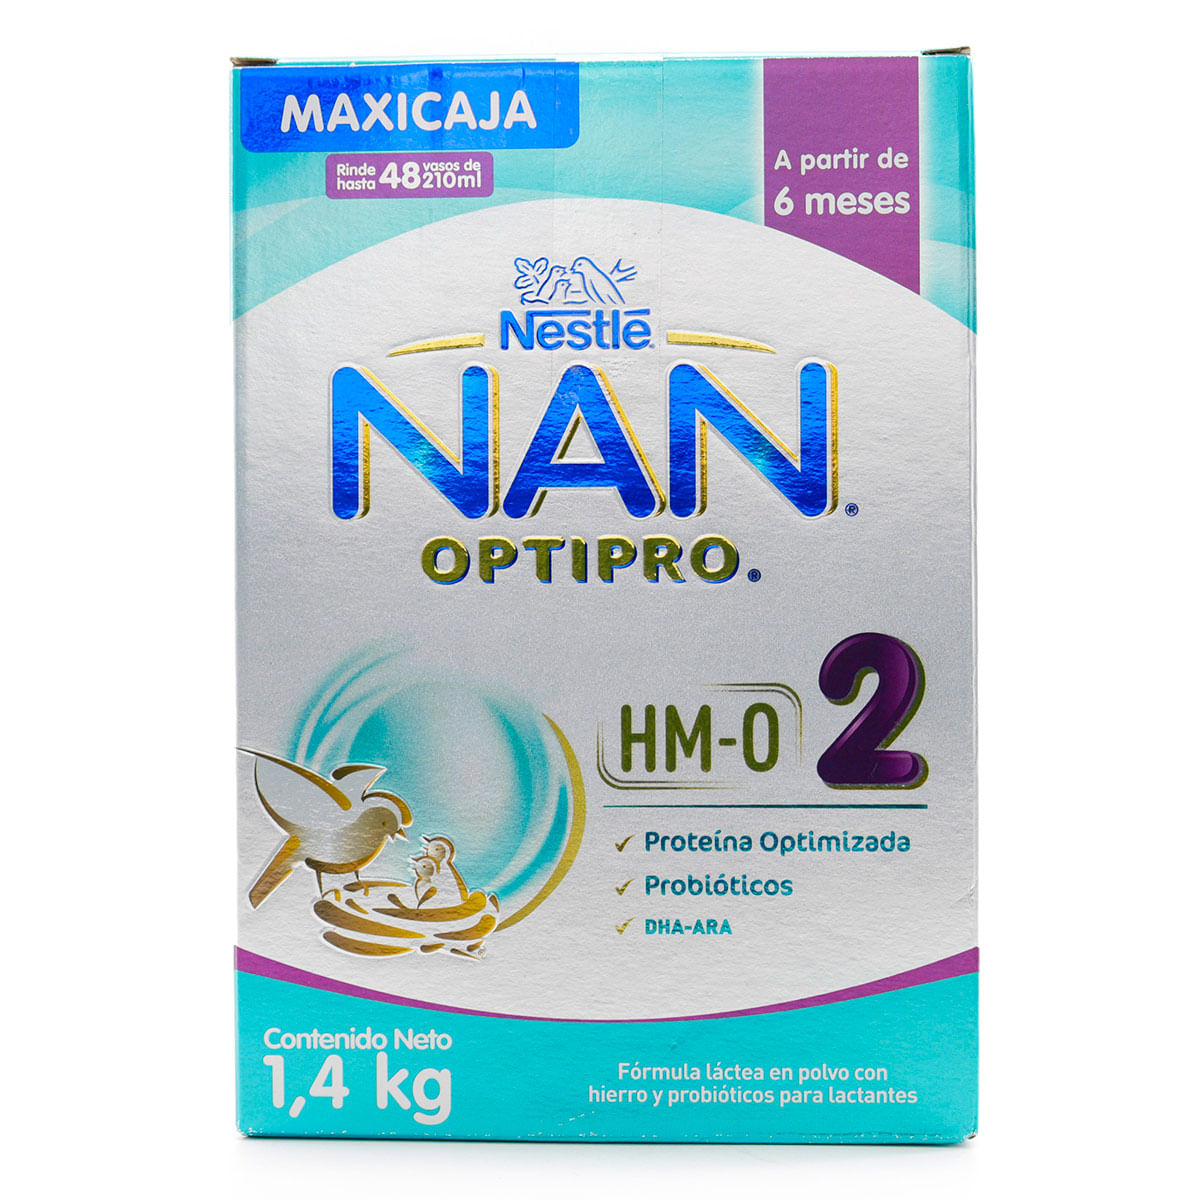 Fórmula Láctea NAN Nestlé Optipro HM-O 2 6 Meses Polvo Maxicaja x 1.4 Kg -  Farmaexpress